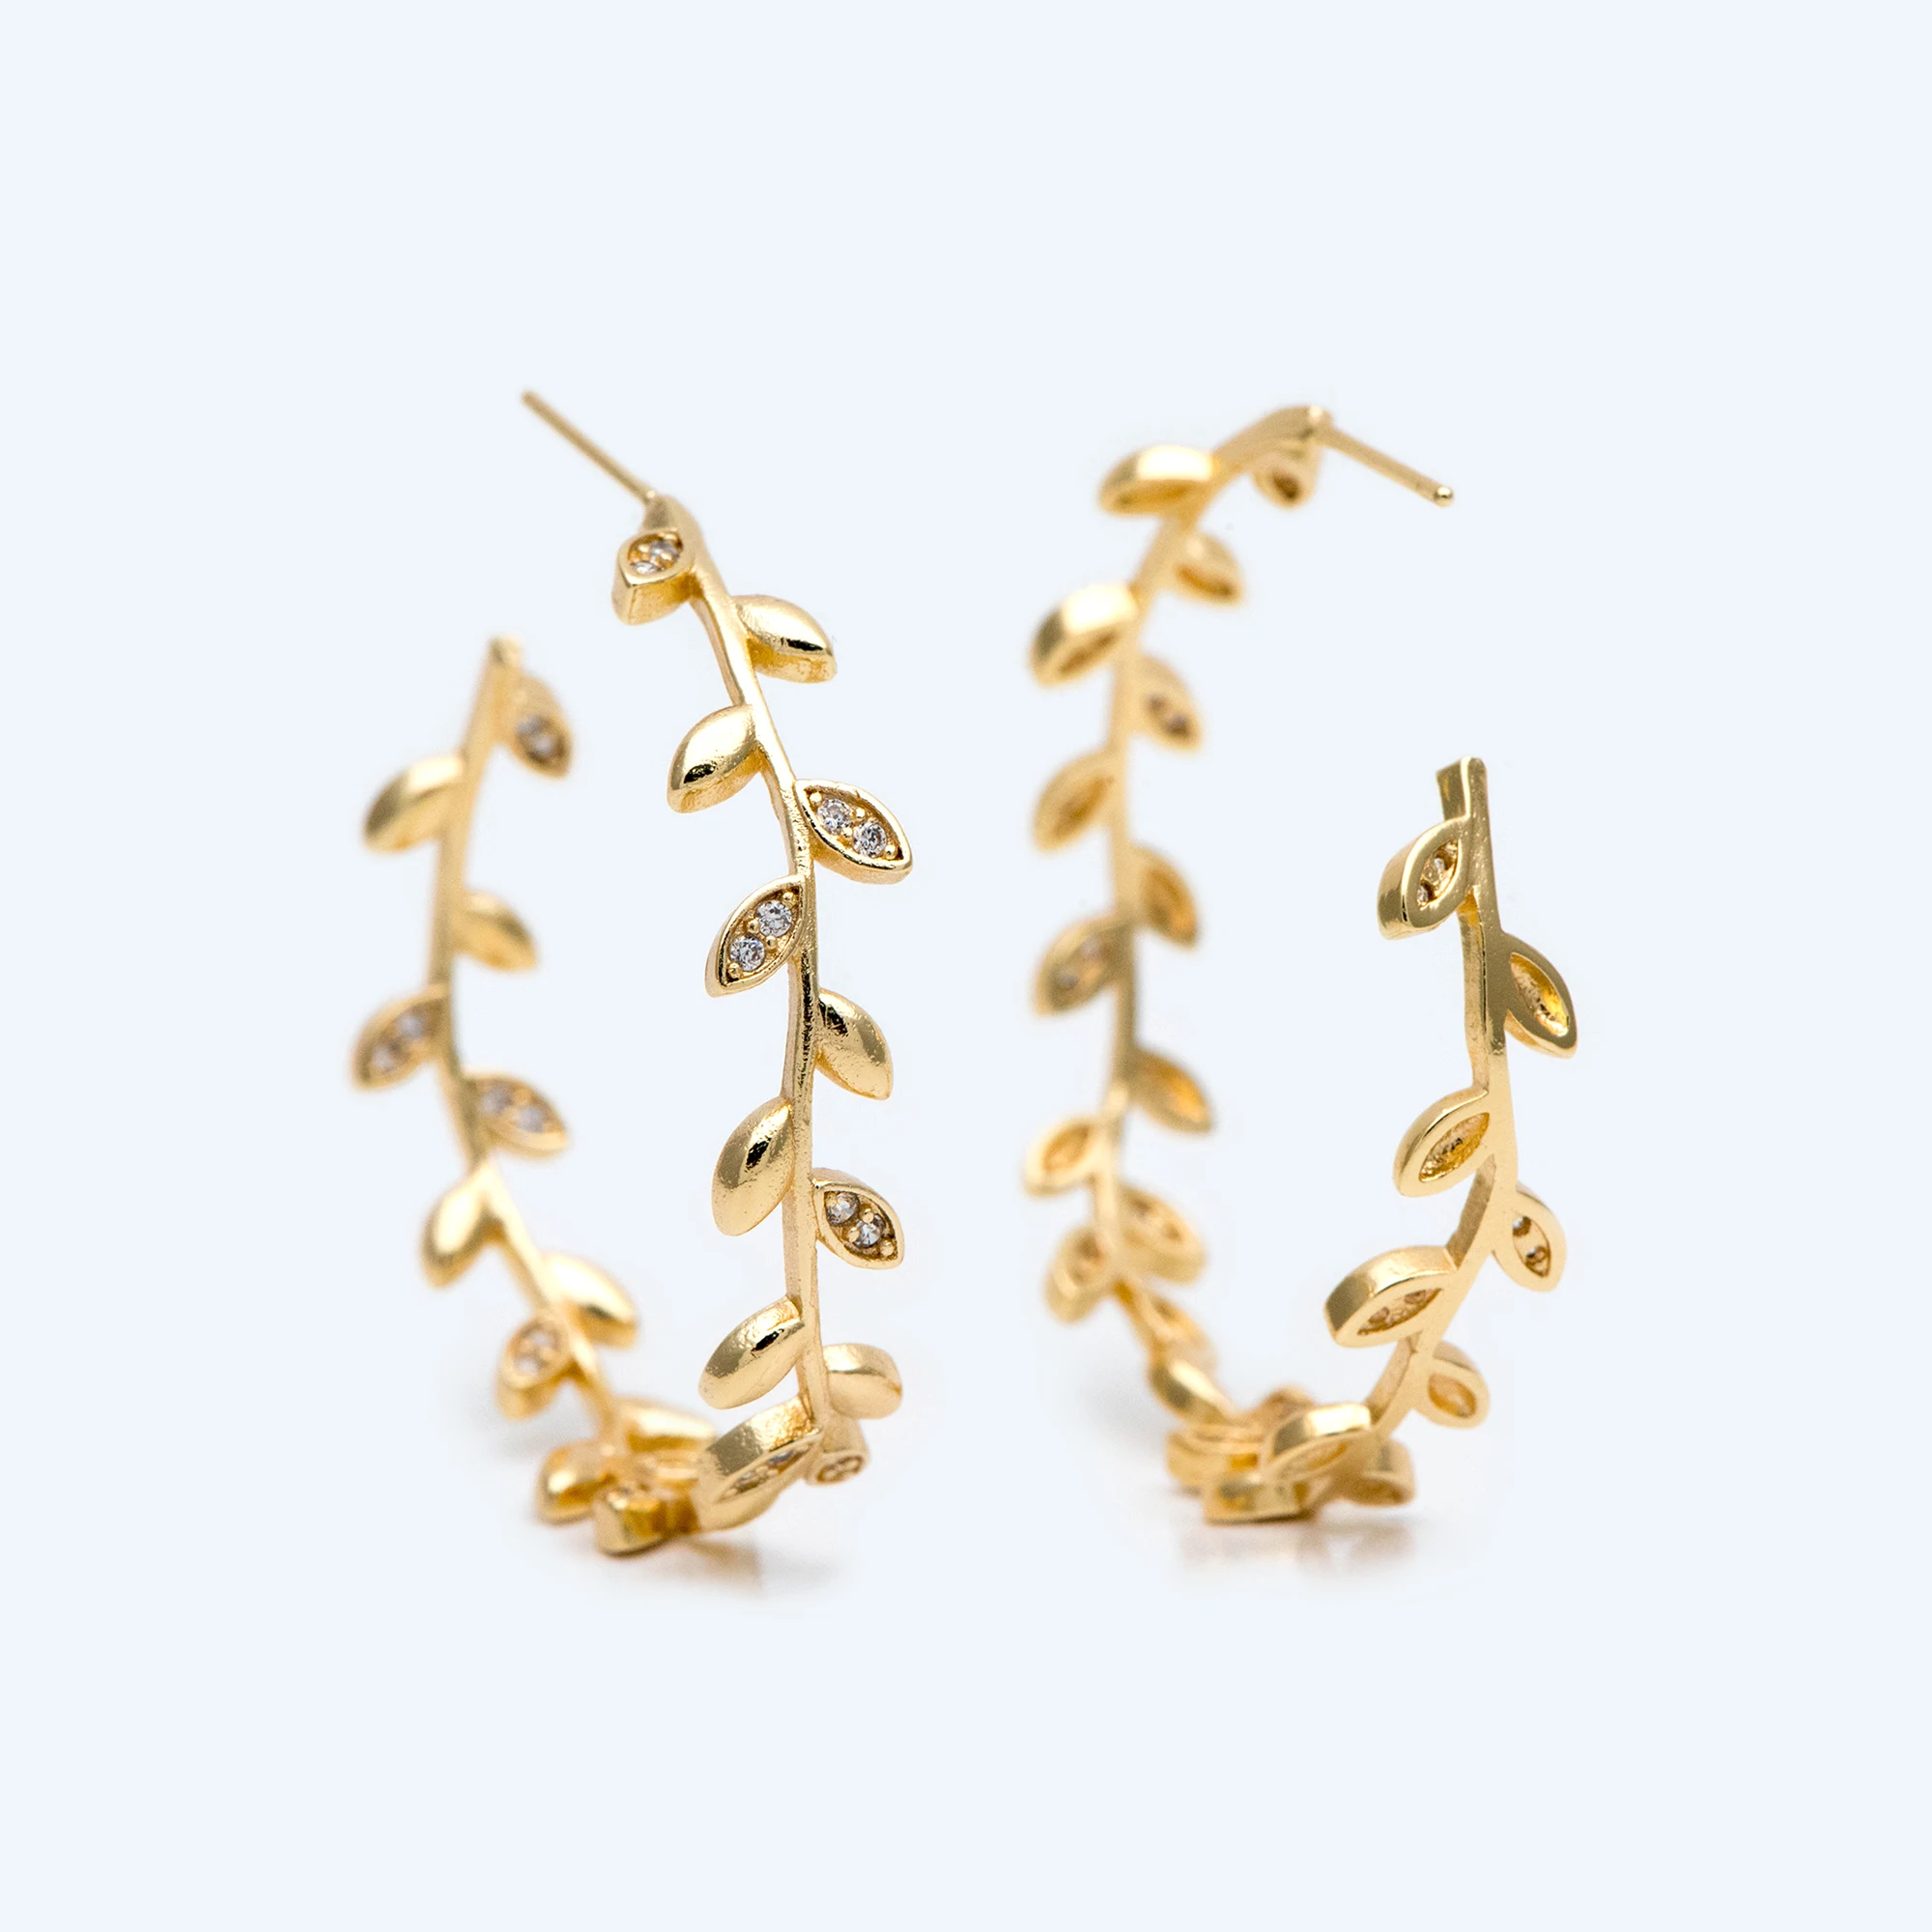 

4pcs CZ Paved Dainty Leaf Hoop Earrings, Gold Hoop Earring, 42mm Circle Earring (GB-2019)